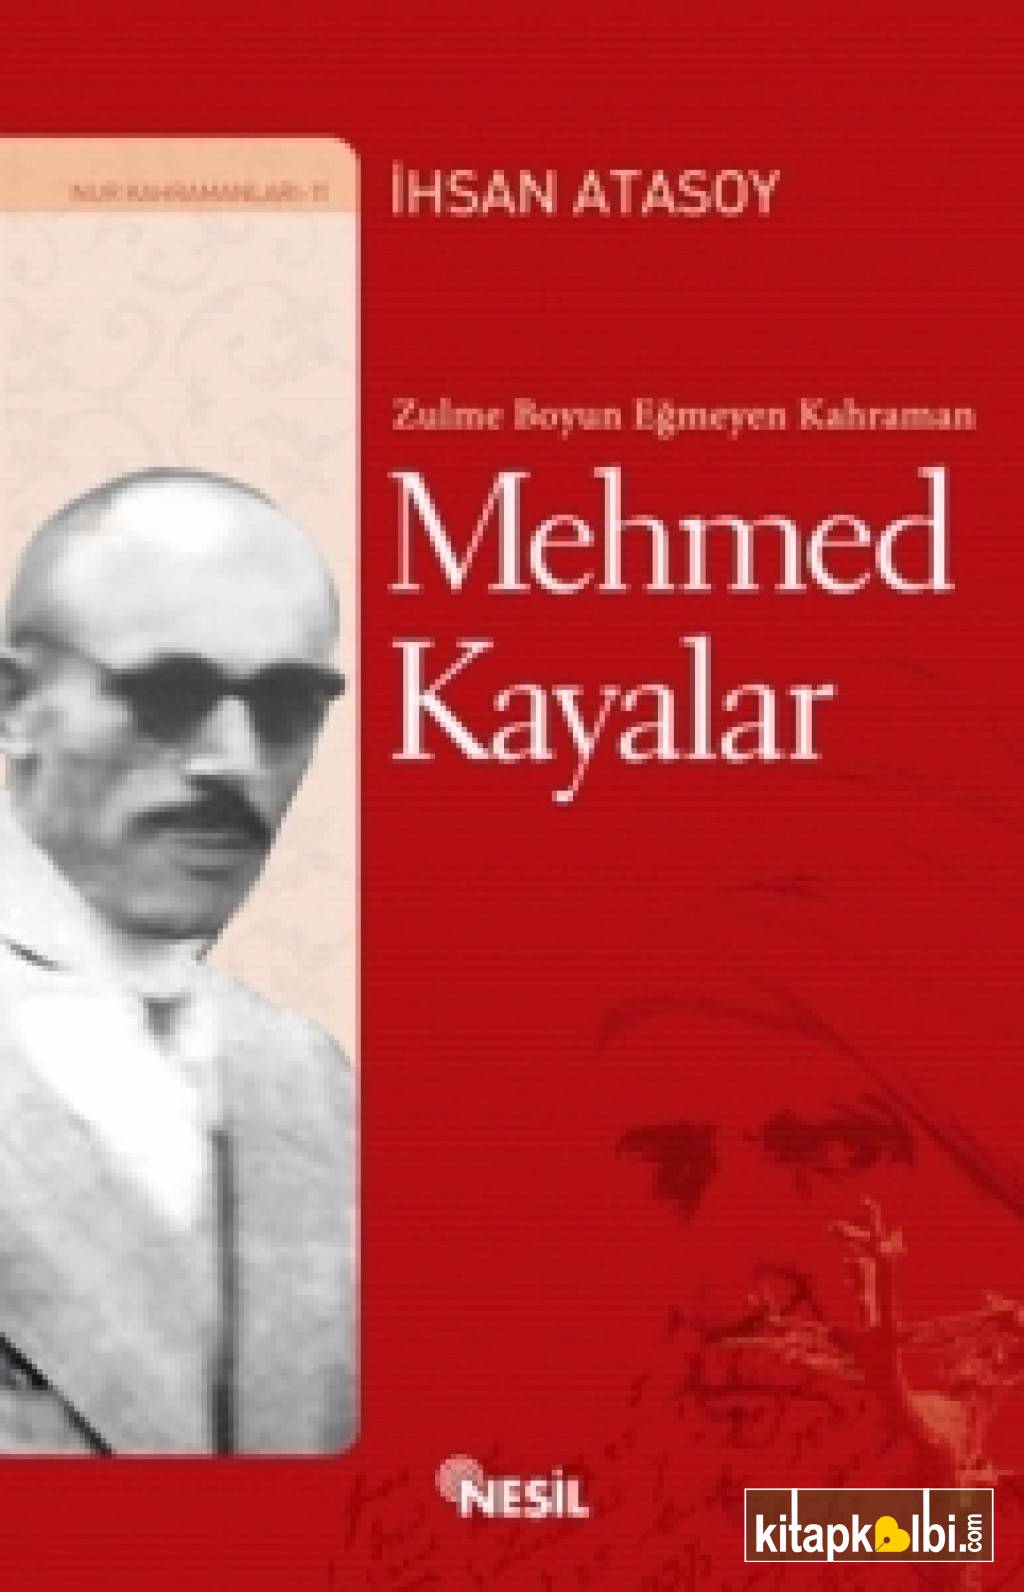 Mehmed Kayalar (Zulme Boyun Eğmeyen Kahraman)